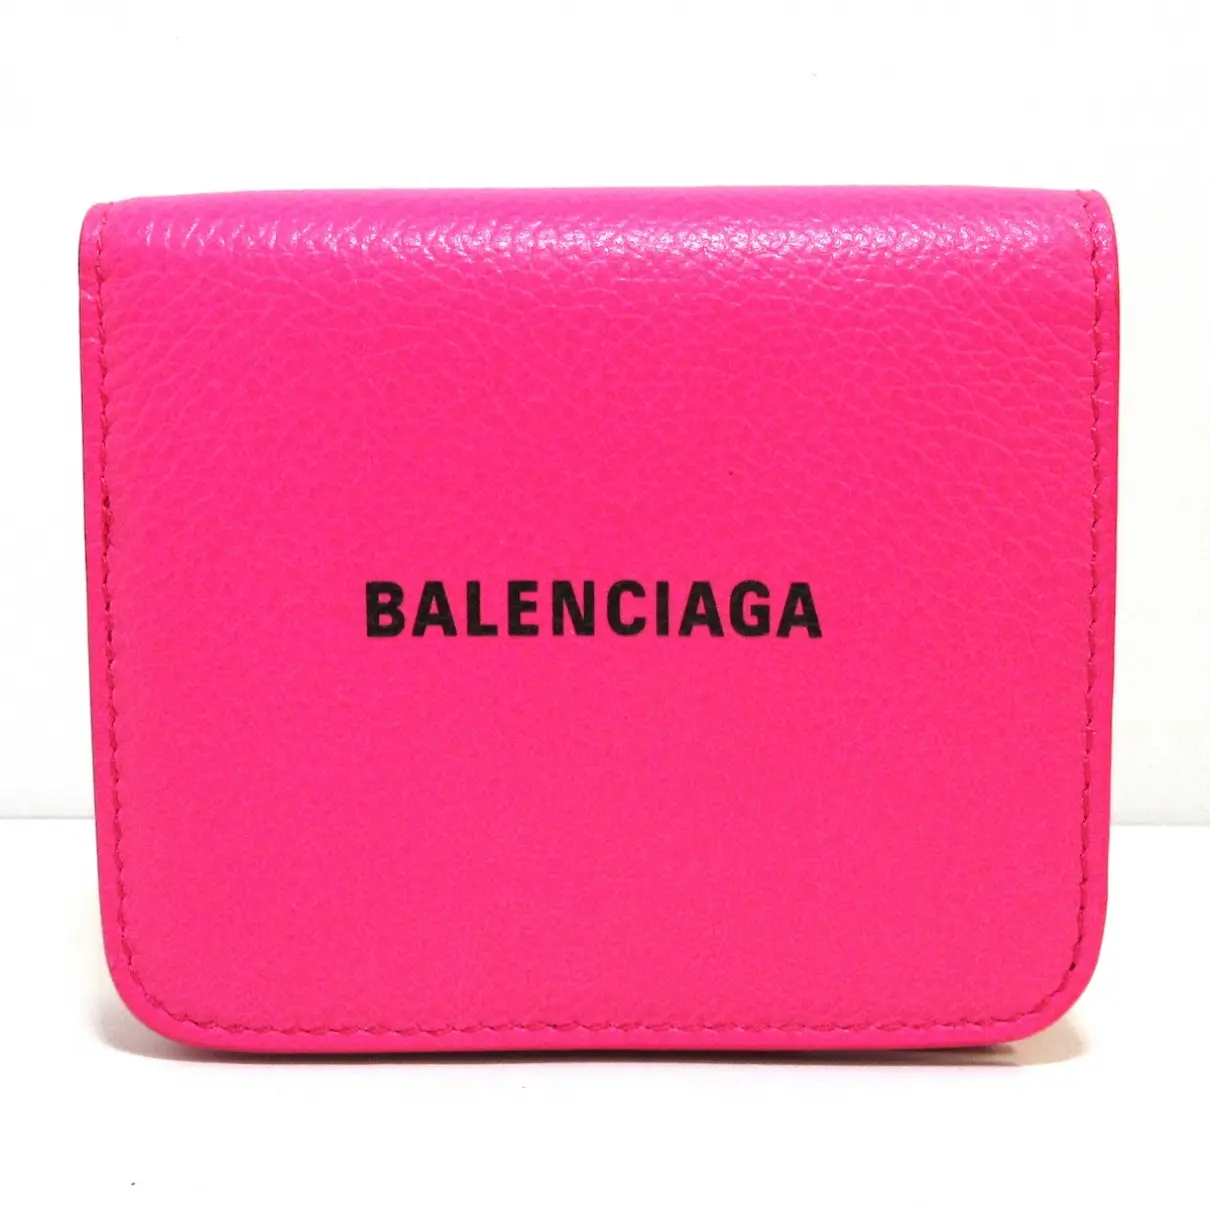 Leather purse Balenciaga